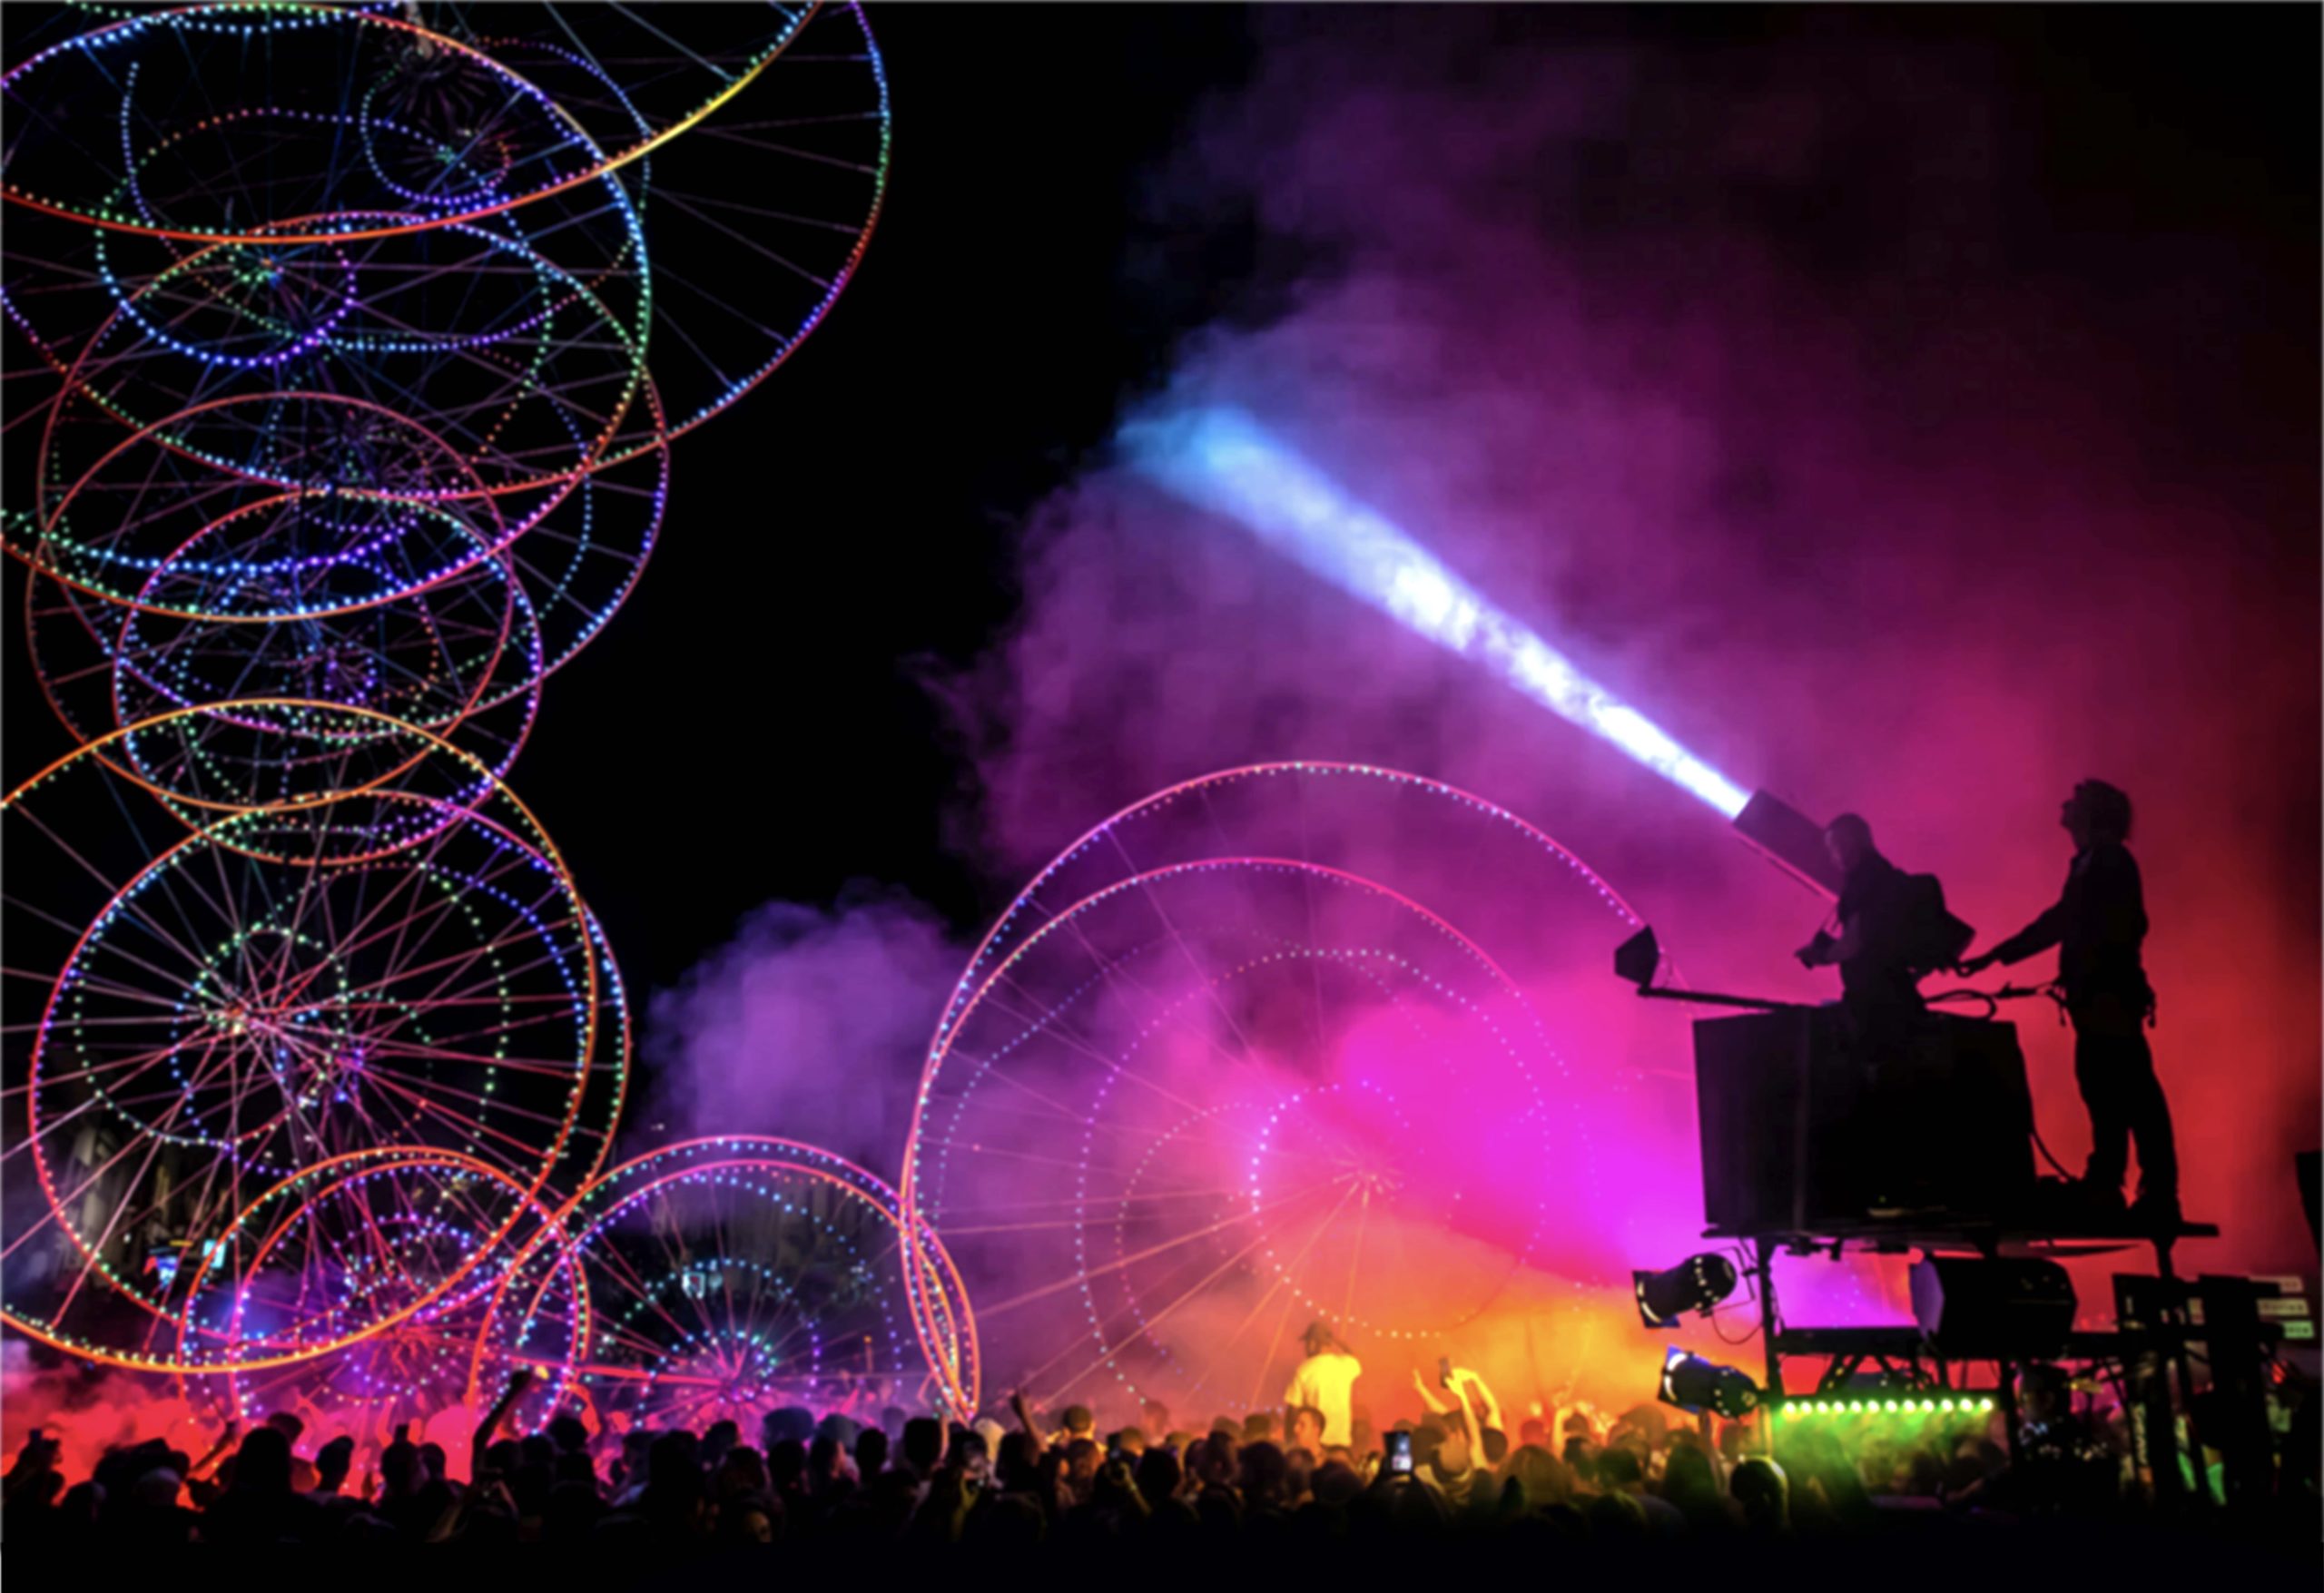 Veranstaltungen im August in Berlin Das Kultursommerfestival startete auf dem Tempelhofer Feld mit einer Lichtshow direkt vom berühmten Burning Man Festival.